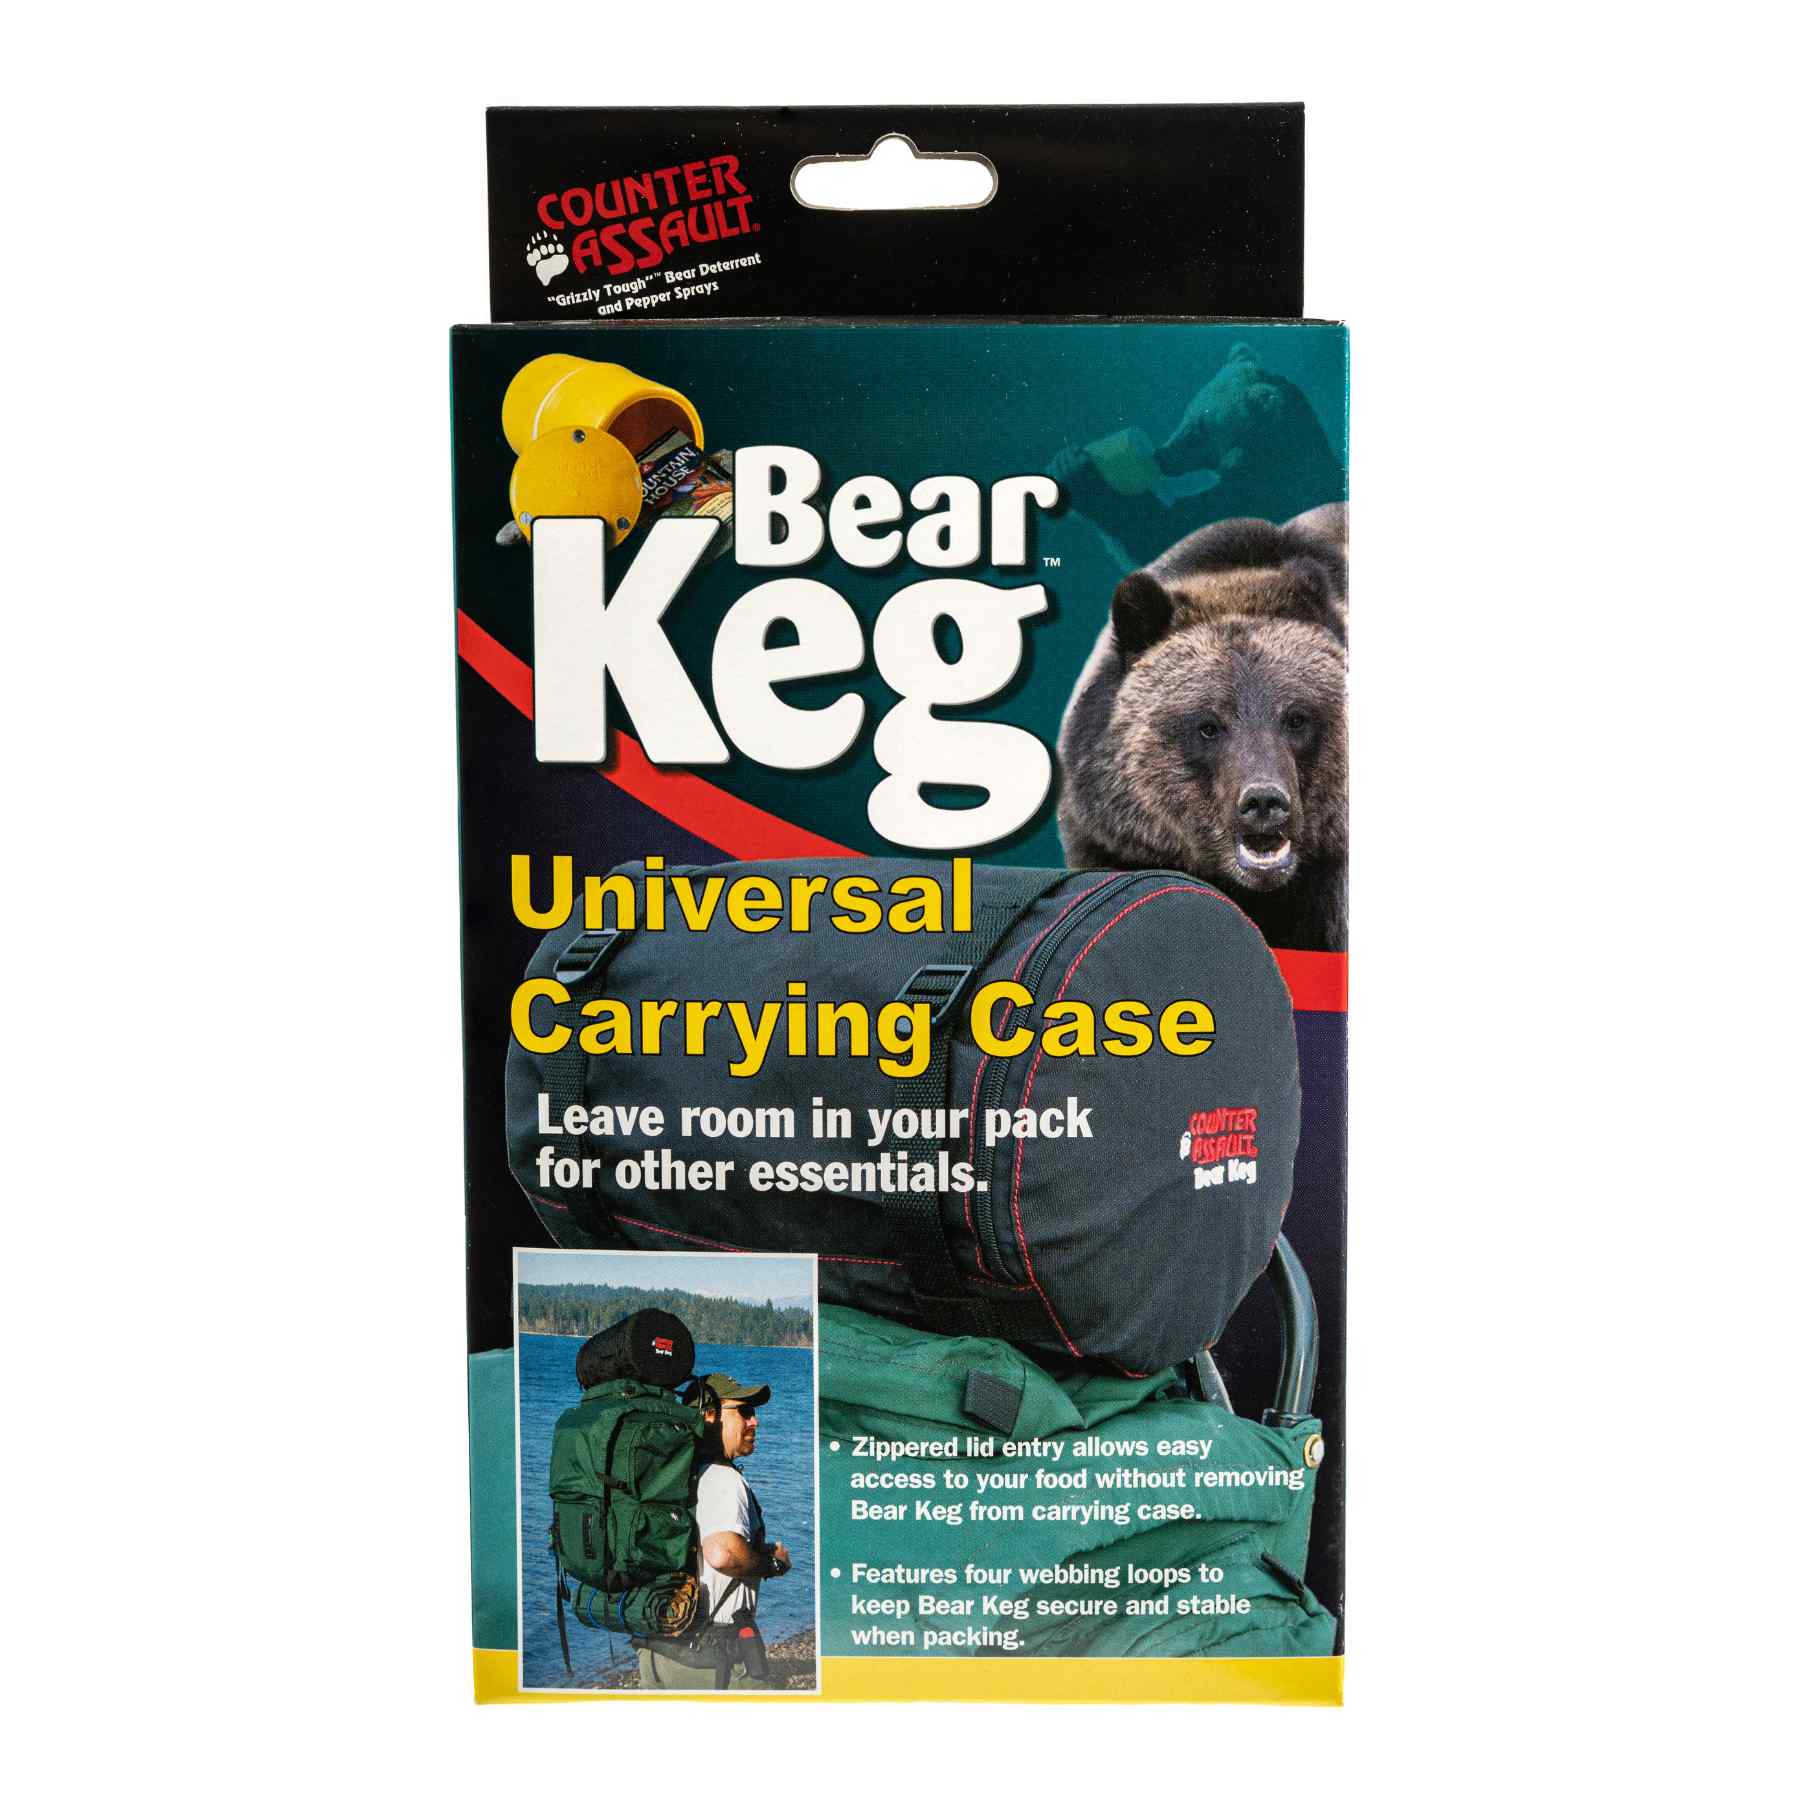 Bear keg universal carrying case